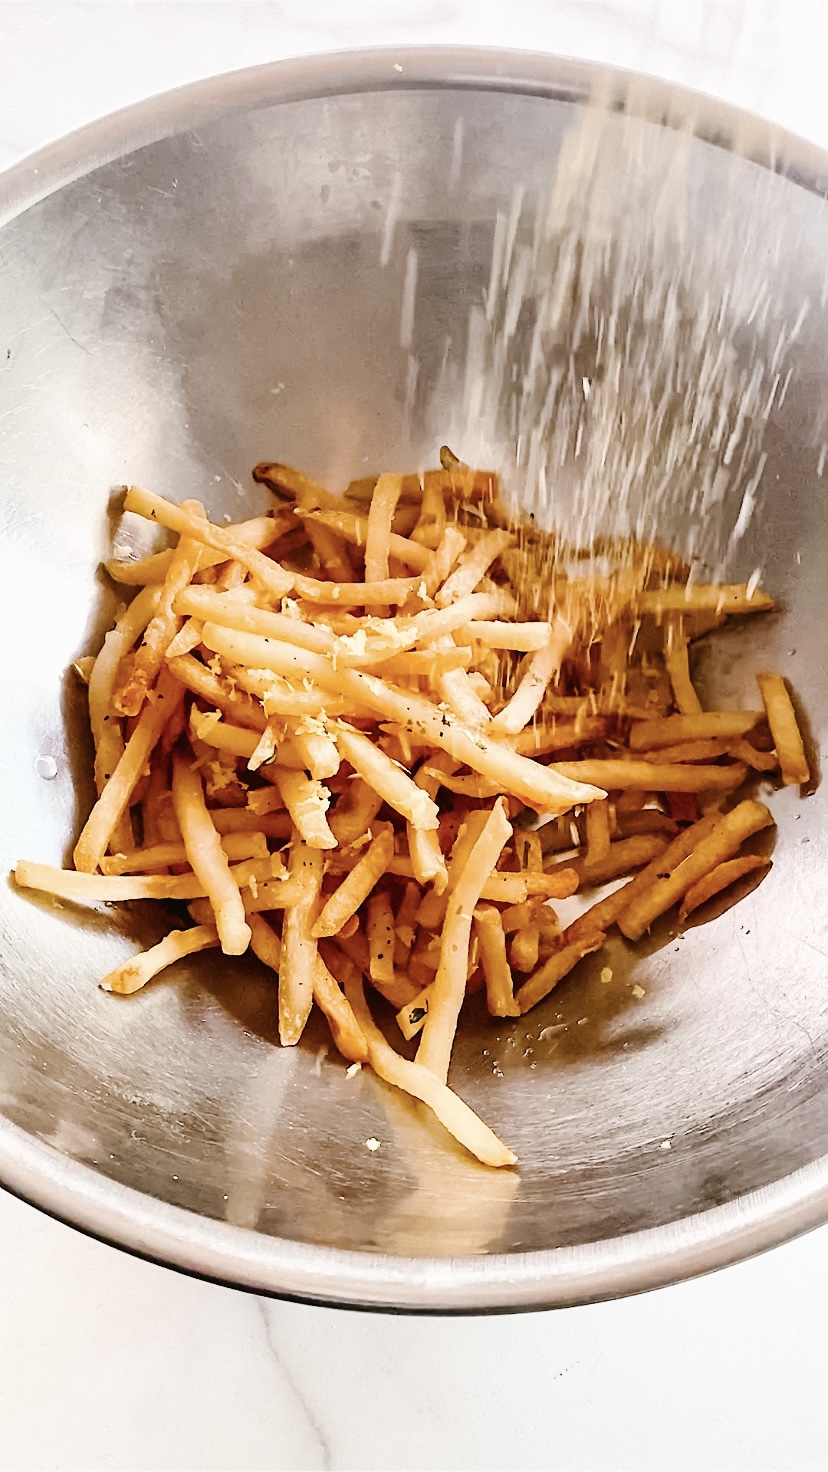 Seasoning fries in a stainless steel bowl.